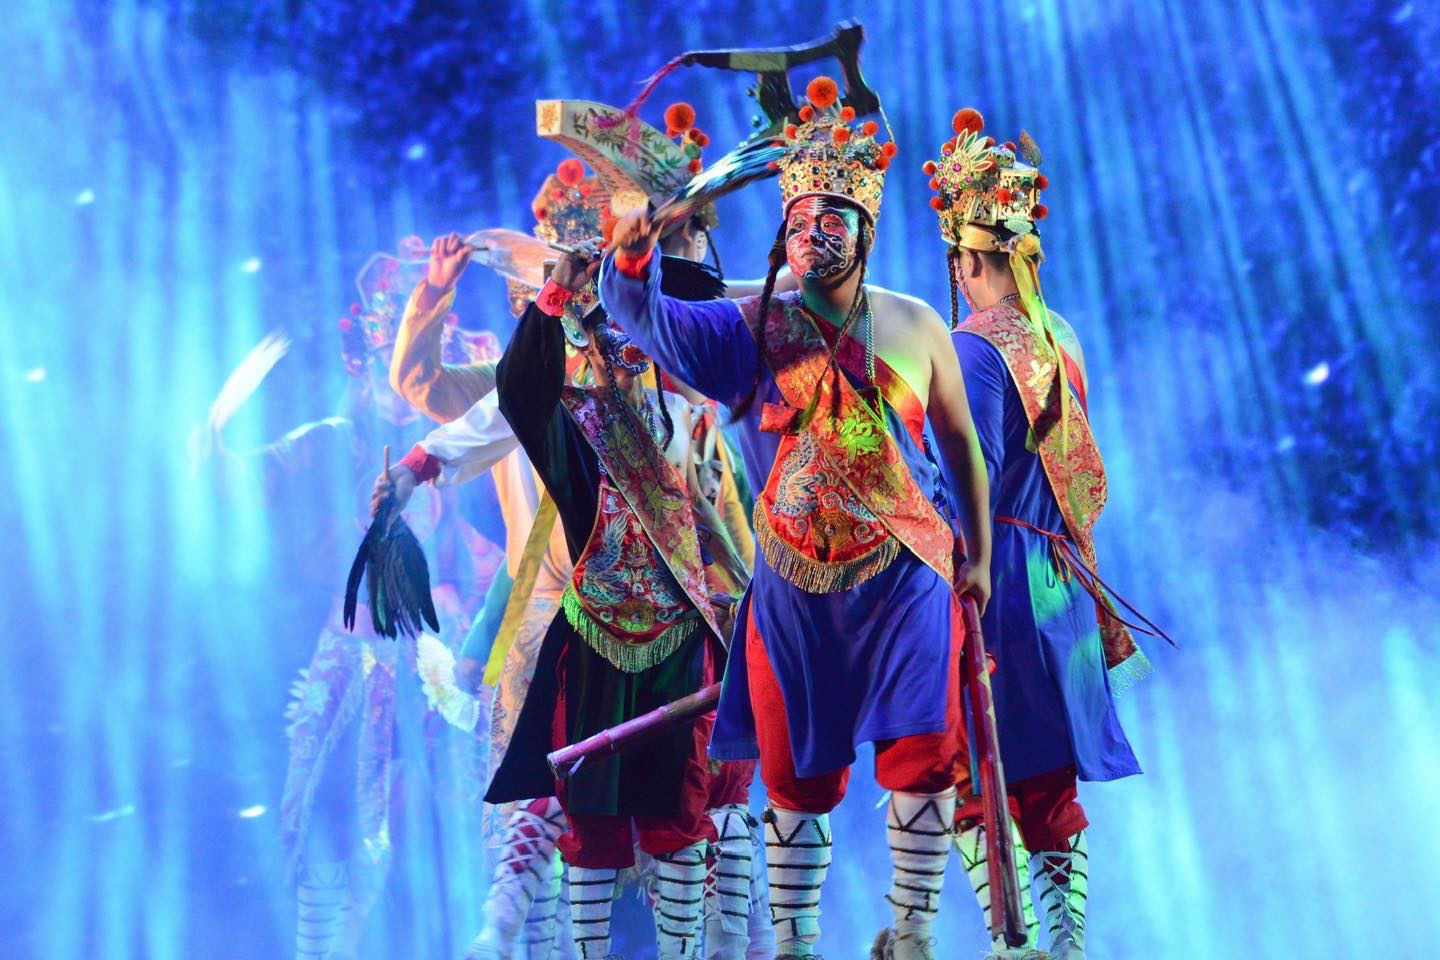 台湾灯会高铁灯区开幕踩街「既国际，又在地」 台南家将及金狮艺阵与日本姐妹市百年舞蹈轮番上阵